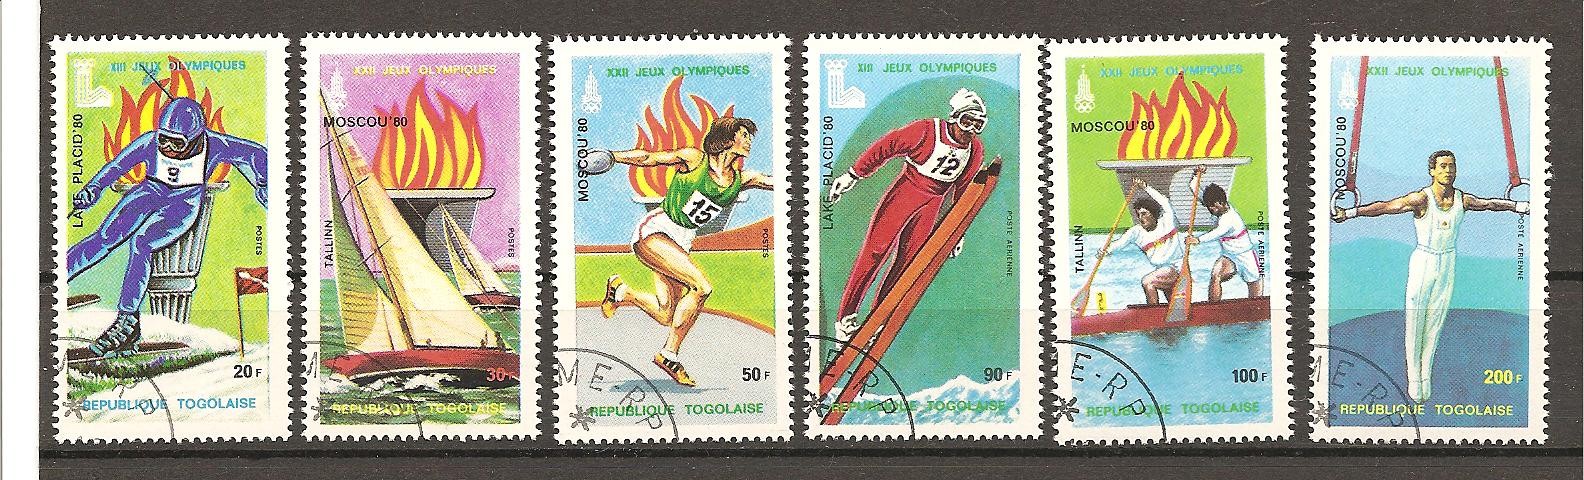 22529 - Togo - serie completa usata: Olimpiadi di Mosca 1980 e Lake Placid 1980